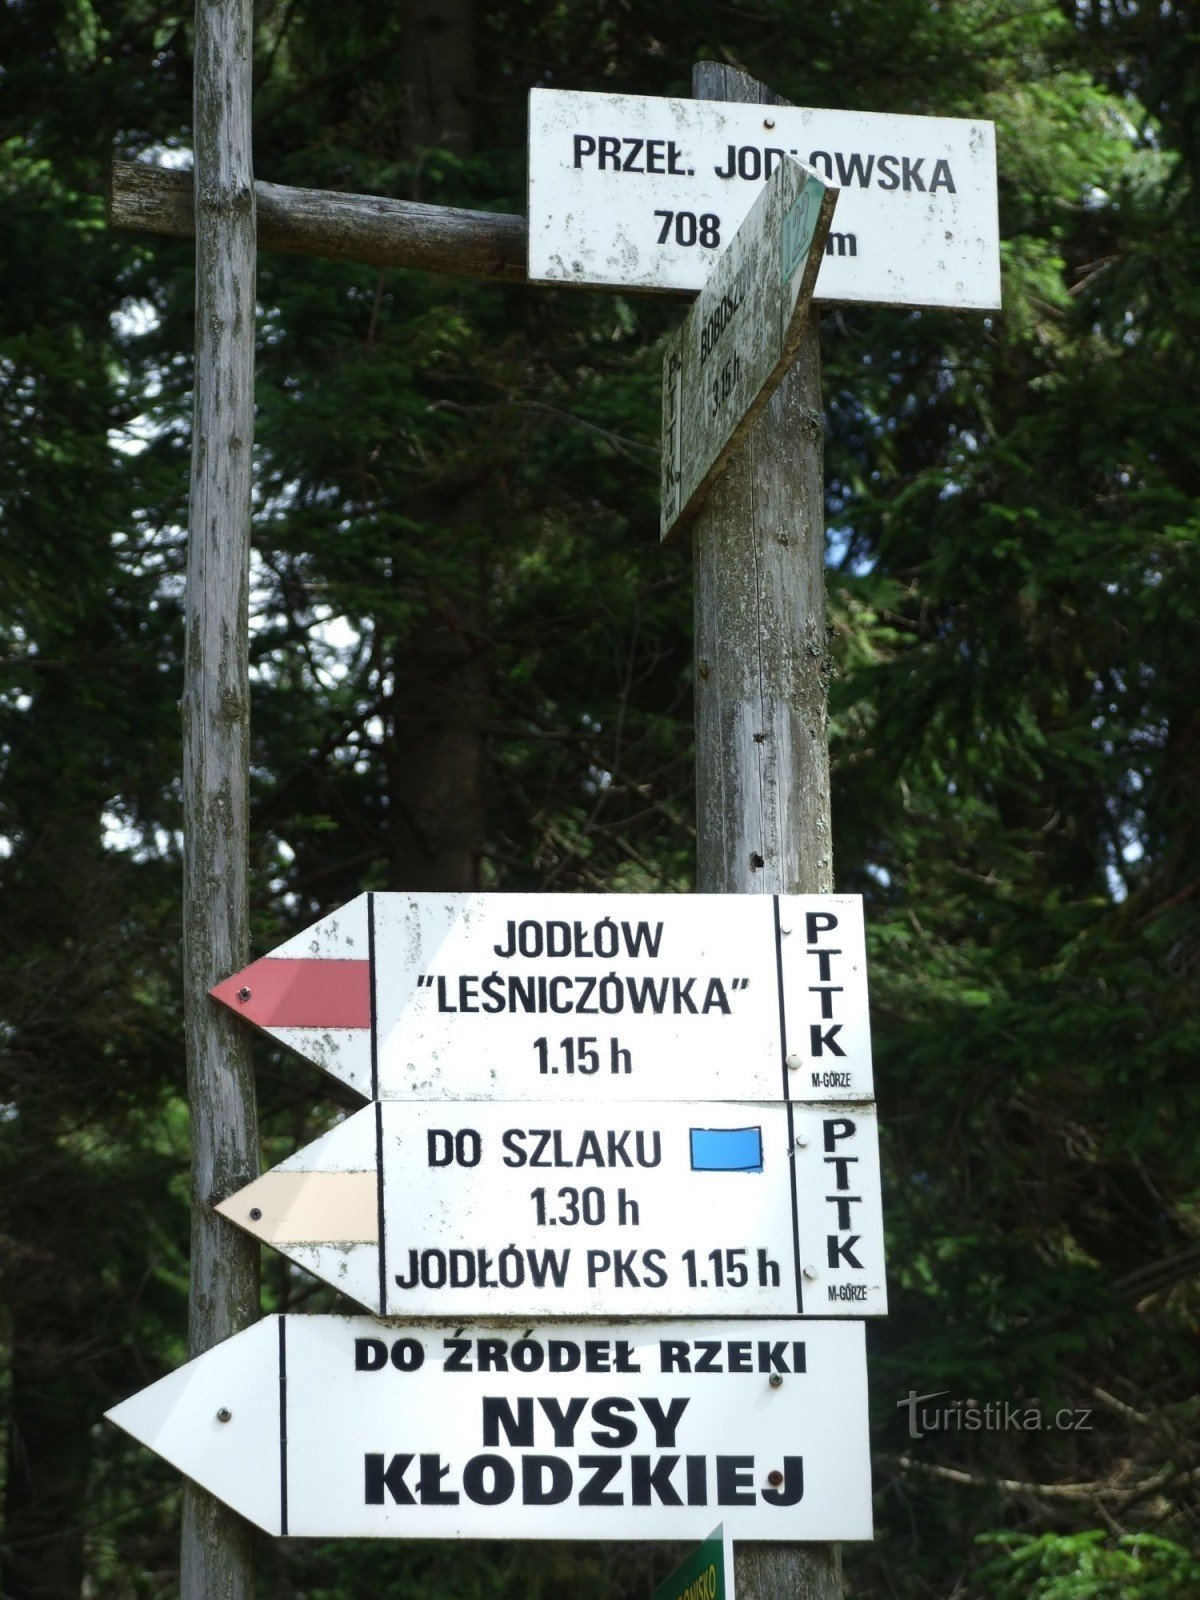 Przel. Jodlowska, polsk guide